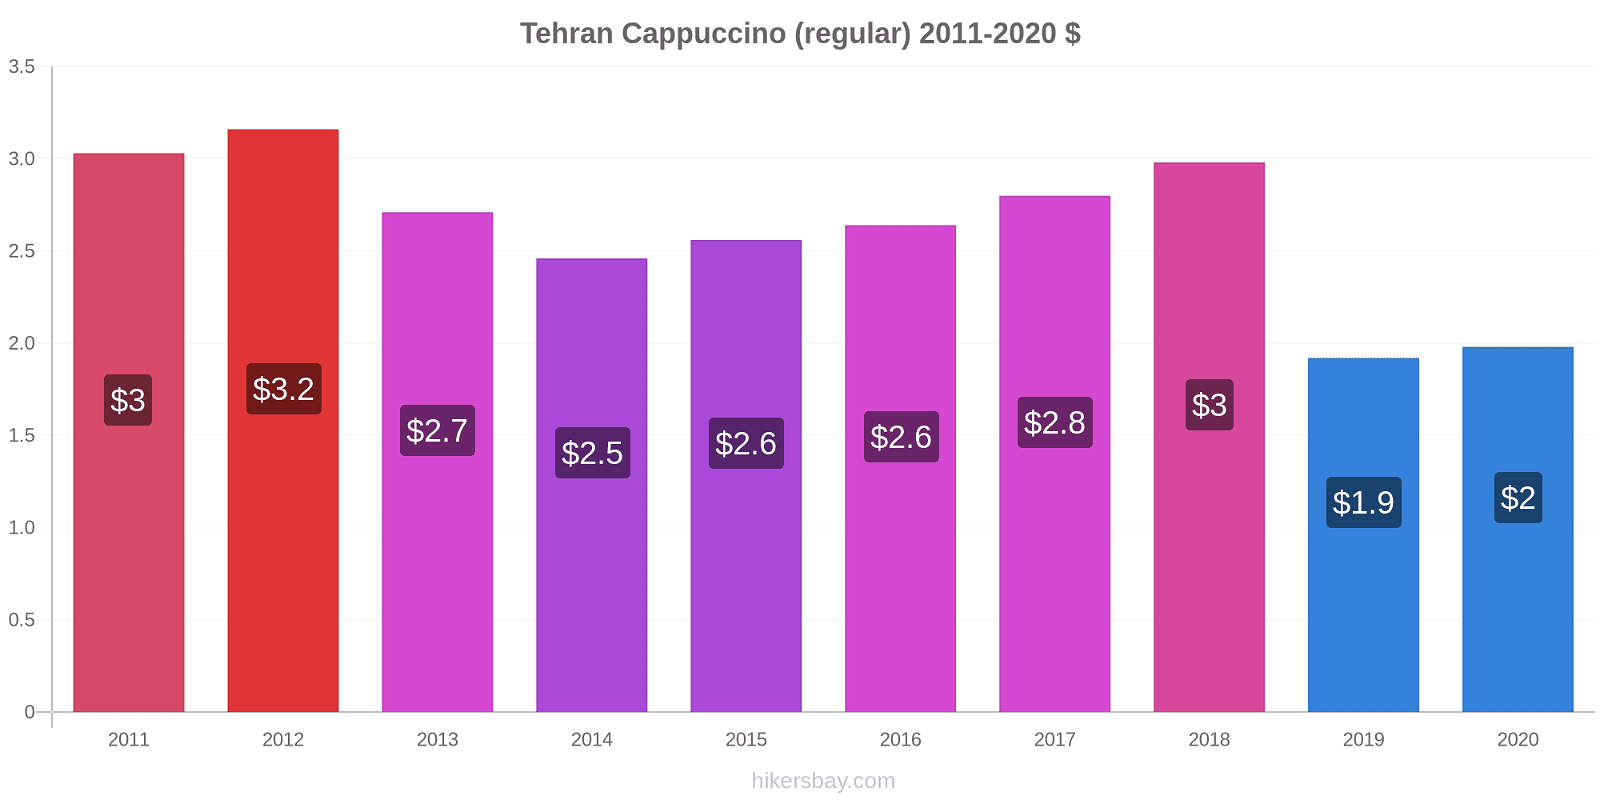 Tehran price changes Cappuccino (regular) hikersbay.com